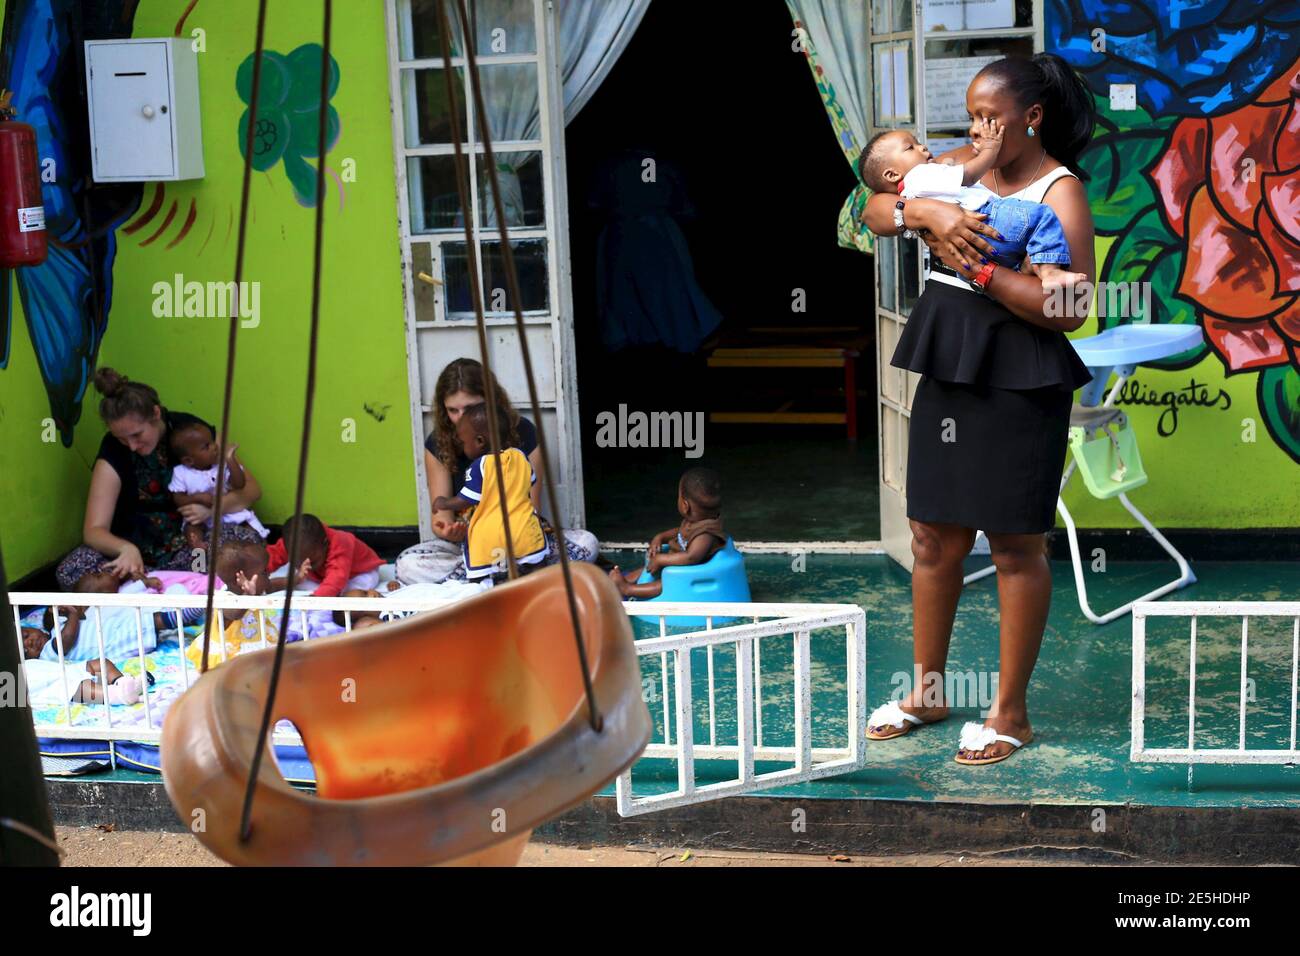 Voluntarios locales y extranjeros juegan con niños abandonados en una casa en la capital de Uganda, Kampala, 14 de mayo de 2015. Las familias ugandesas han sido sobornadas, engañadas o coaccionadas para entregar a sus hijos a ciudadanos estadounidenses y otros extranjeros para su adopción, según una investigación de la Fundación Thomson Reuters. Foto tomada el 14 de mayo de 2015. REUTERS/James Akena Foto de stock